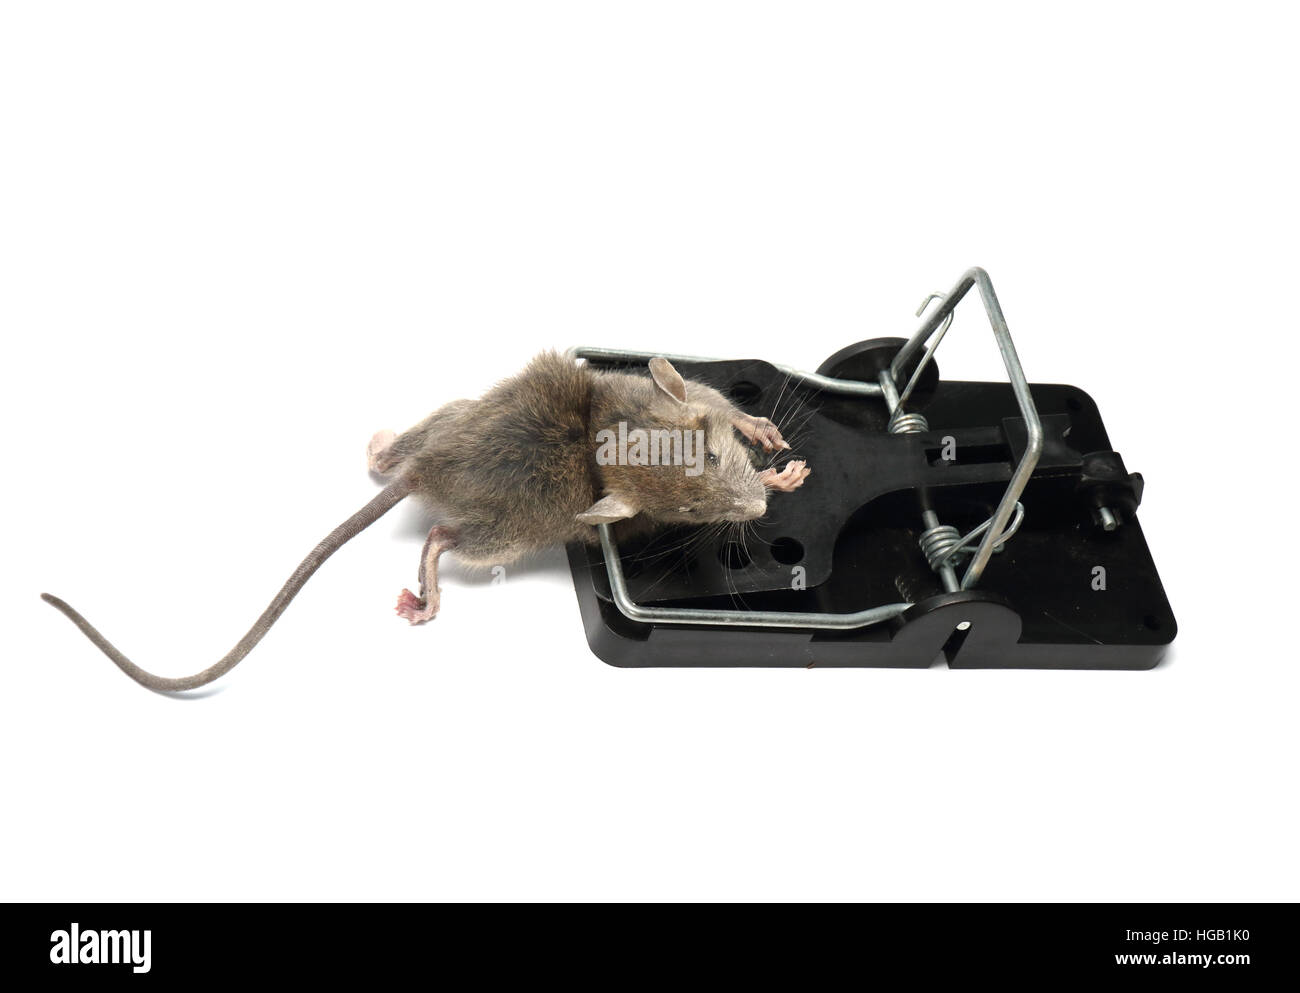 Casa el ratón, Mus musculus, capturado y muerto en una trampa de resorte. Fotografiado sobre un fondo blanco y preparado para el corte. Foto de stock